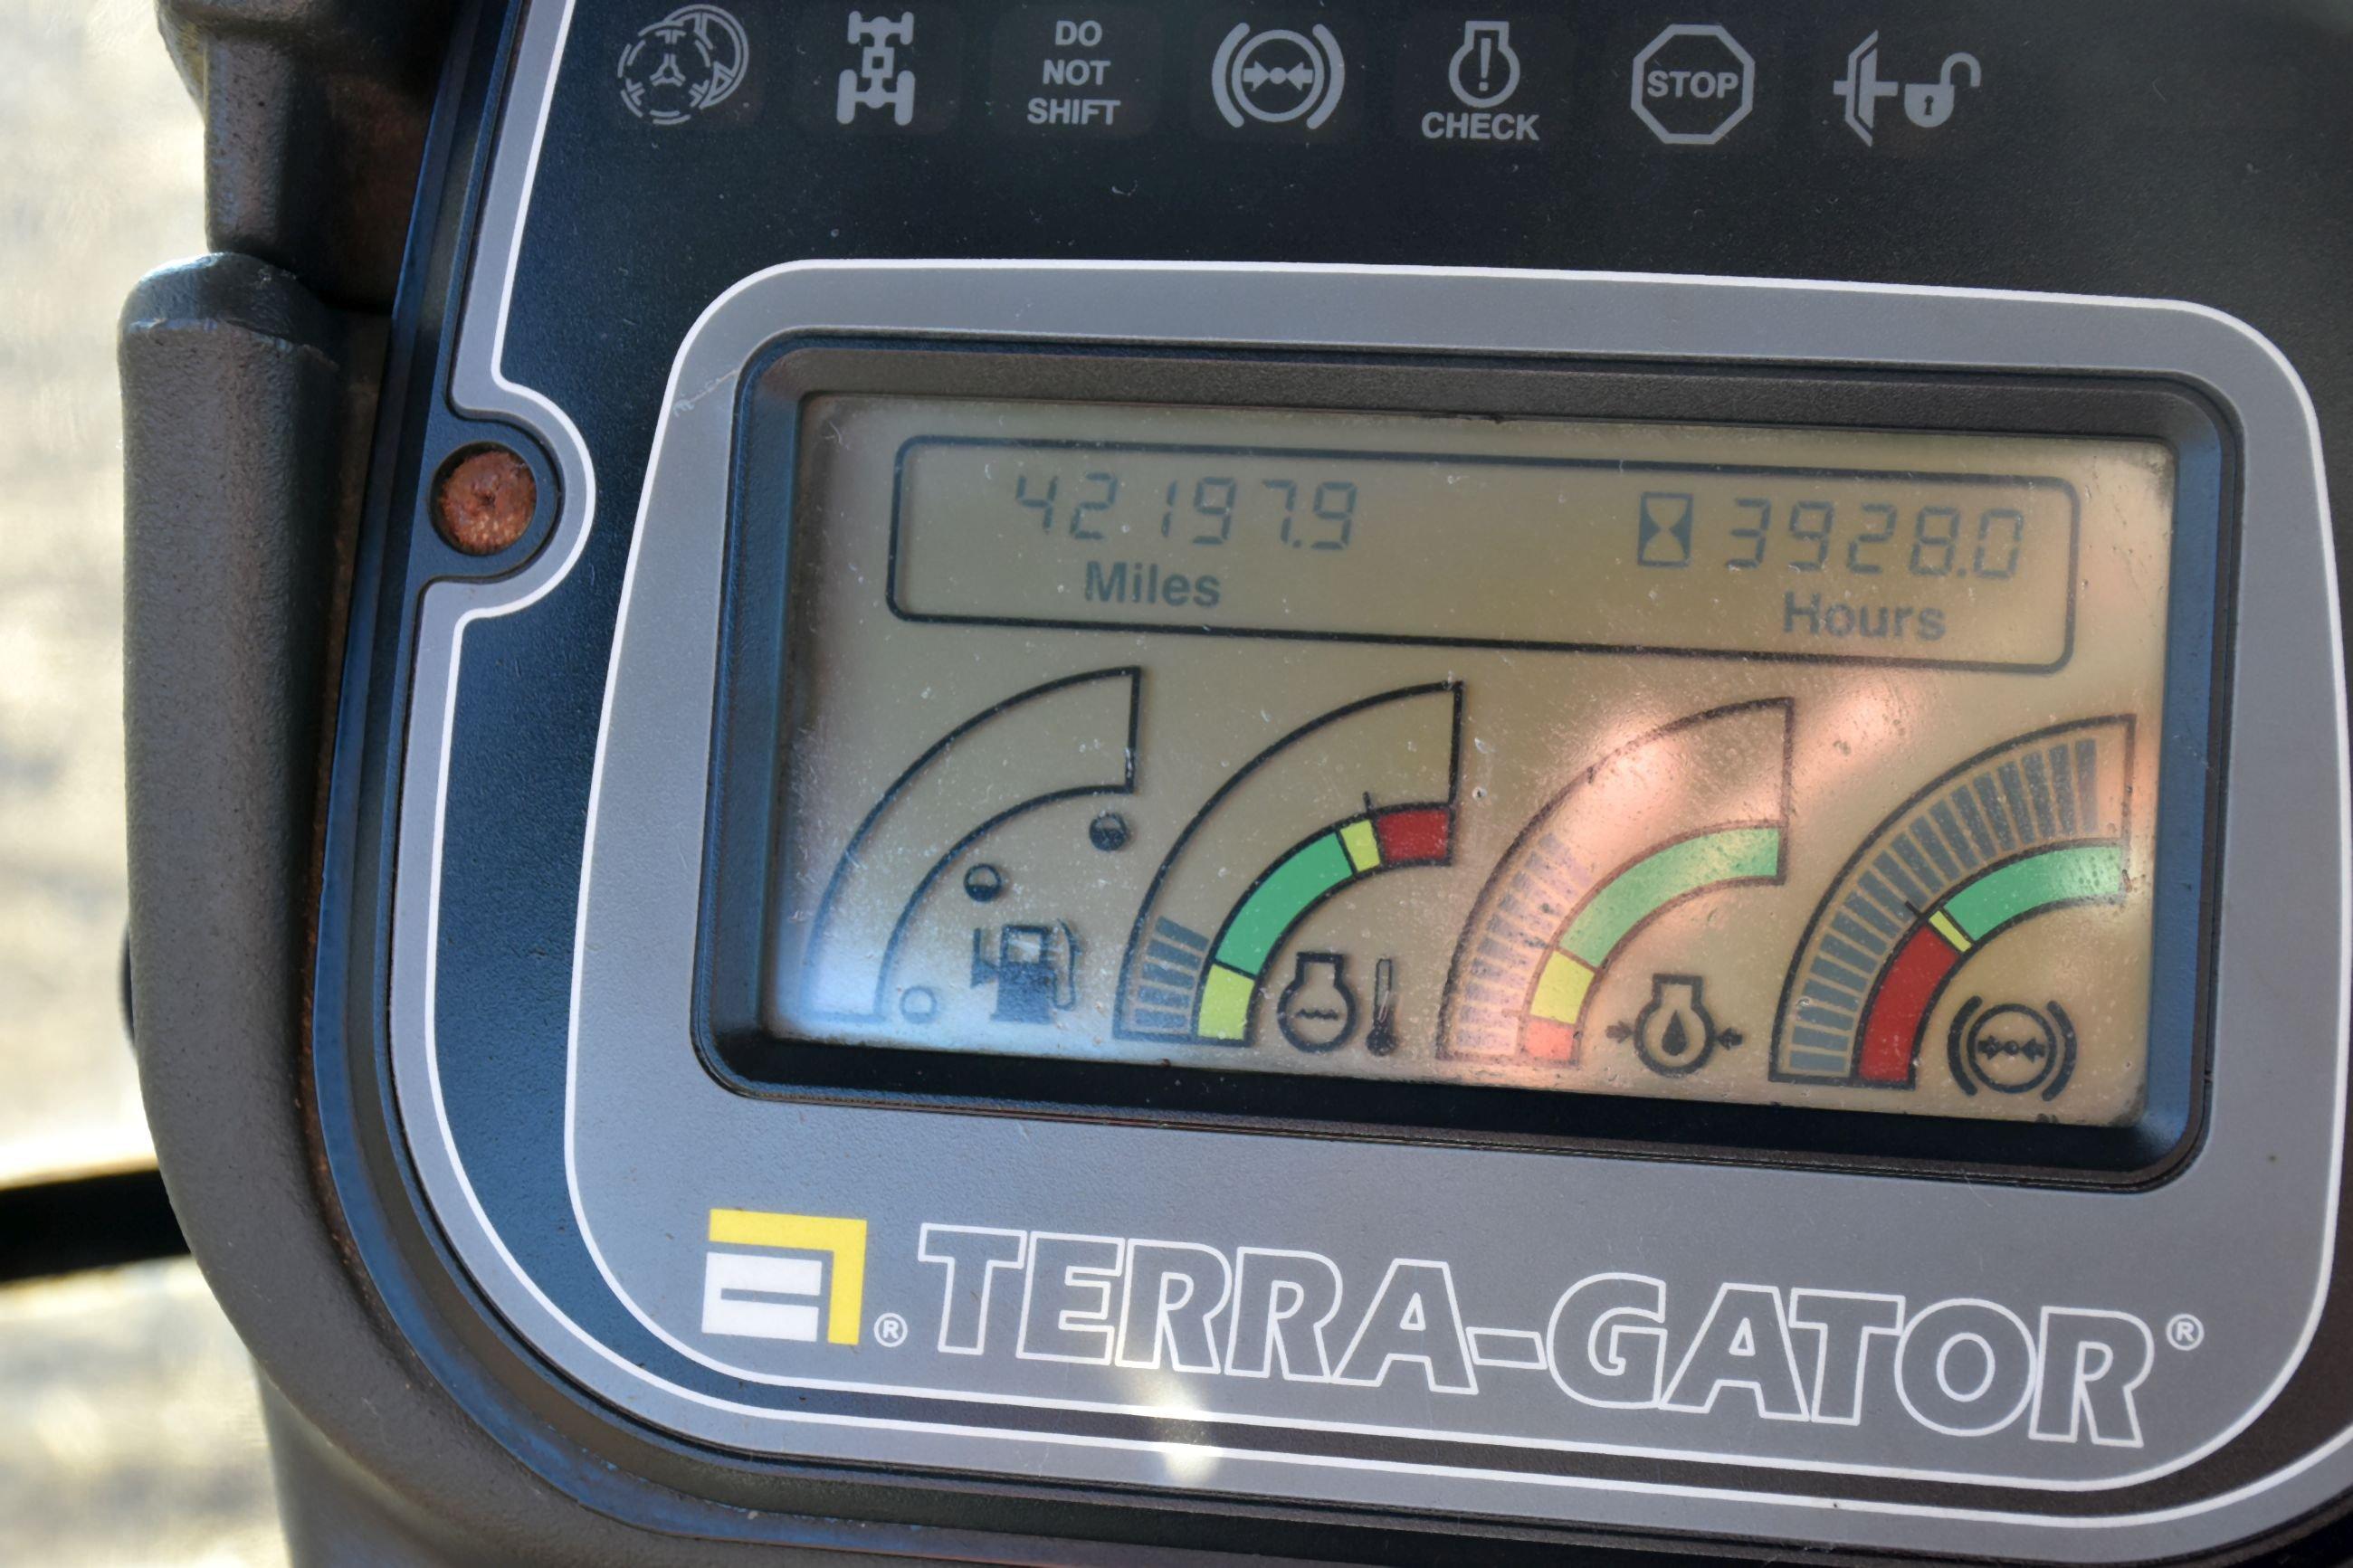 Terra Gator 8103 Air Spreader, 3998 Hours, Air Spreader Box, Roll Tarp, 70’ Booms, Trimble Guidance